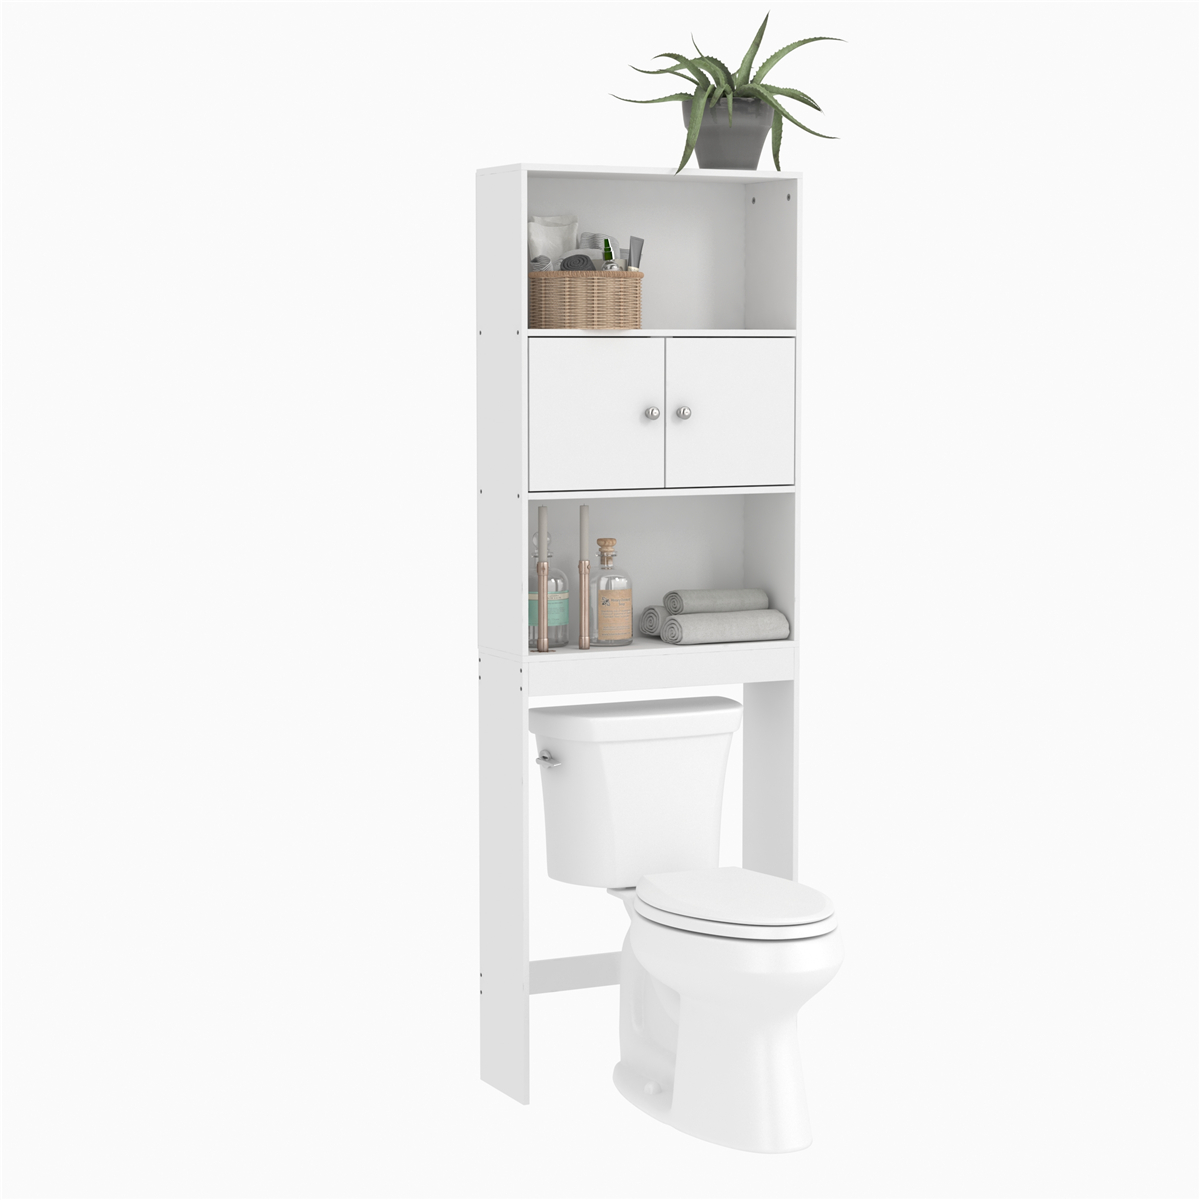 

56X19X165 Шкаф для ванной Туалет Ванная комната Space Saver Шкаф для хранения Белый